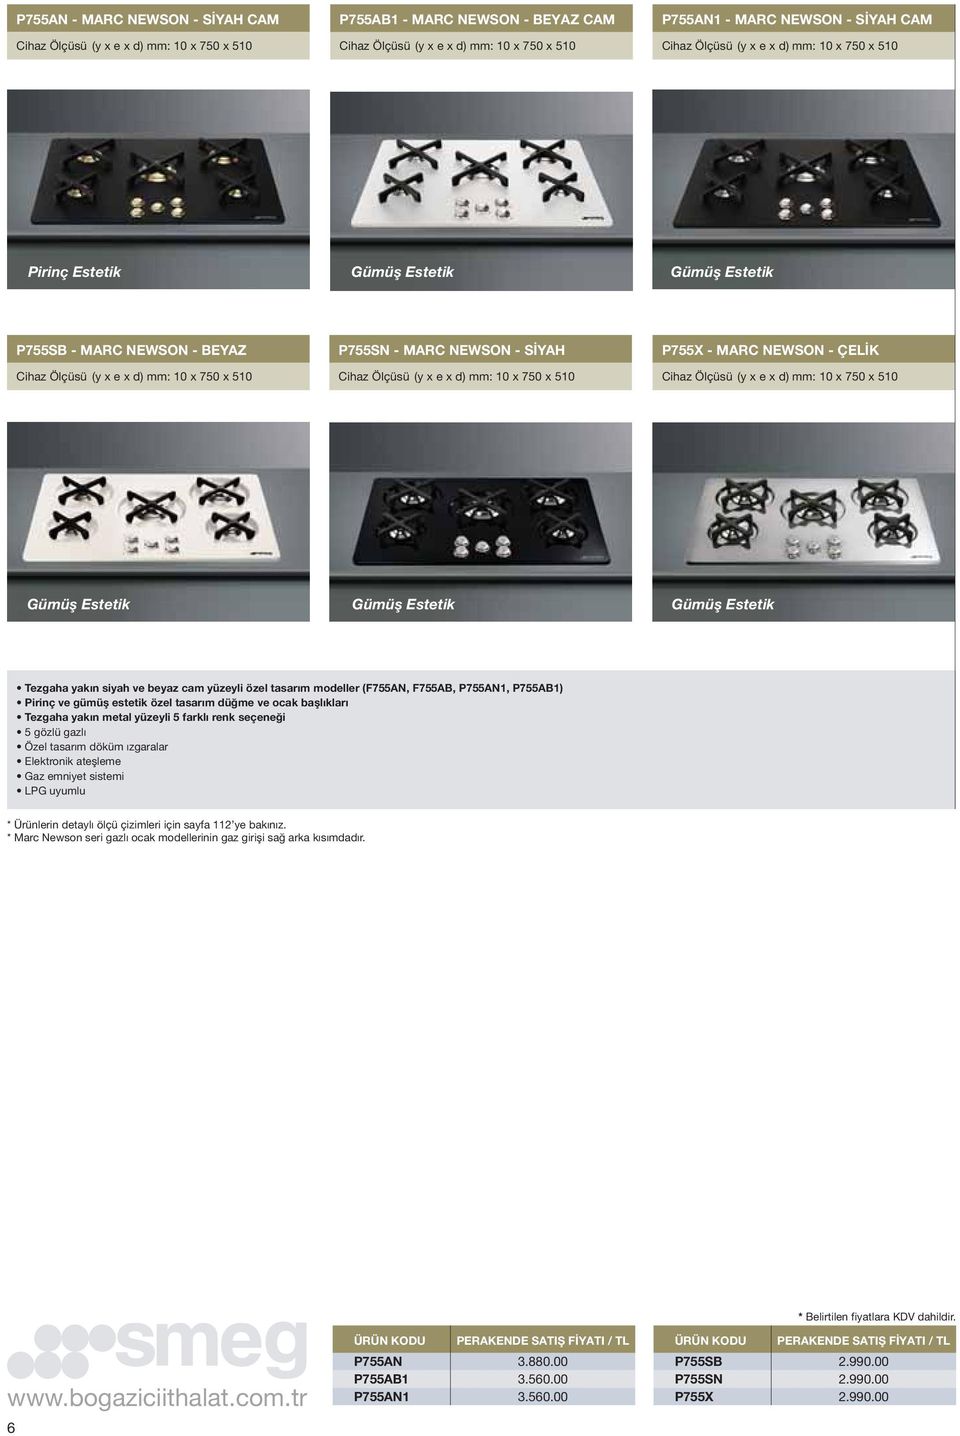 P755X - MARC NEWSON - ÇELİK Cihaz Ölçüsü (y x e x d) mm: 10 x 750 x 510 Tezgaha yakın siyah ve beyaz cam yüzeyli özel tasarım modeller (F755AN, F755AB, P755AN1, P755AB1) Pirinç ve gümüş estetik özel